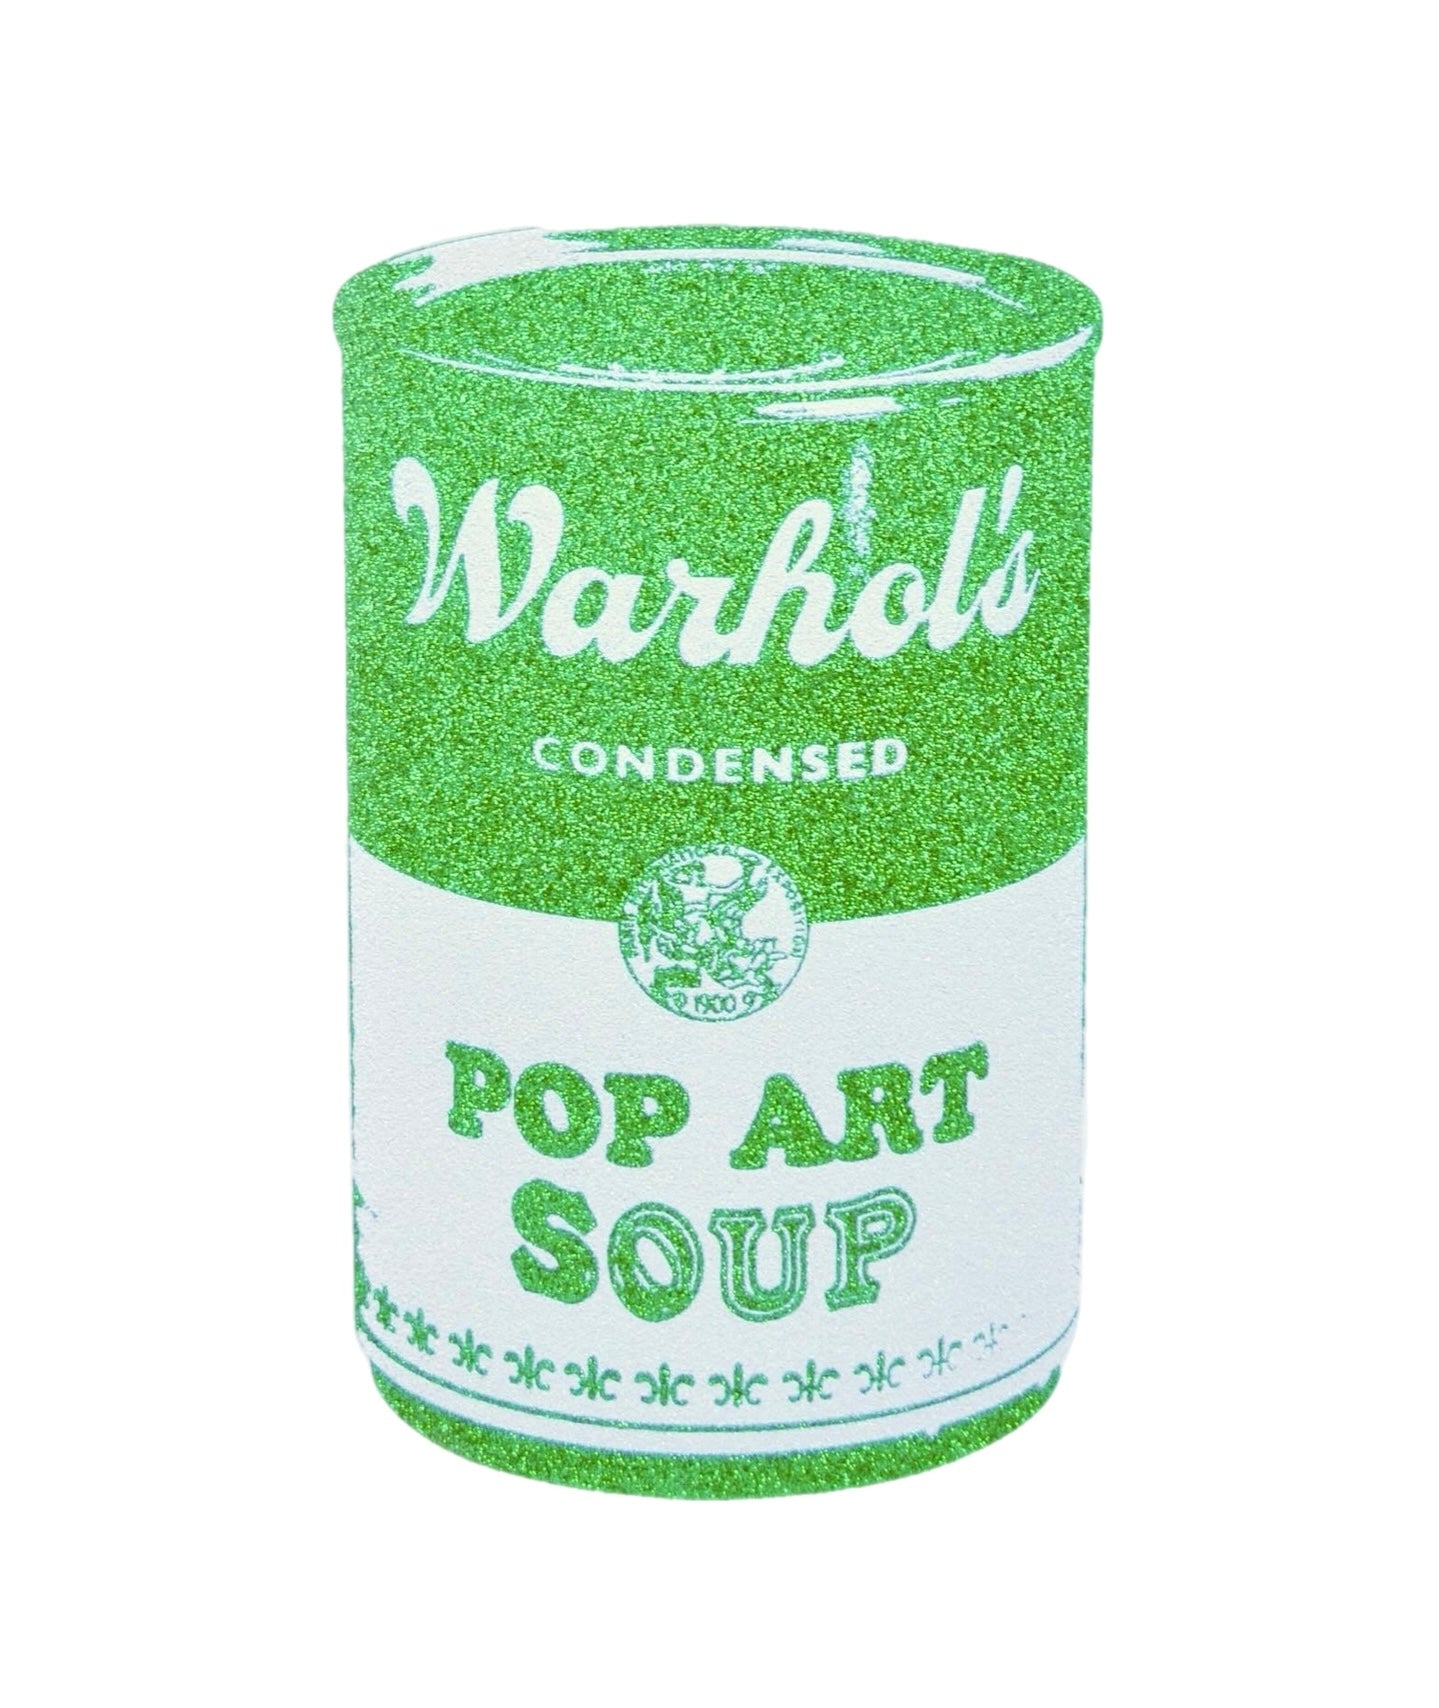 Pop Art Soup, 2013, Grass Green